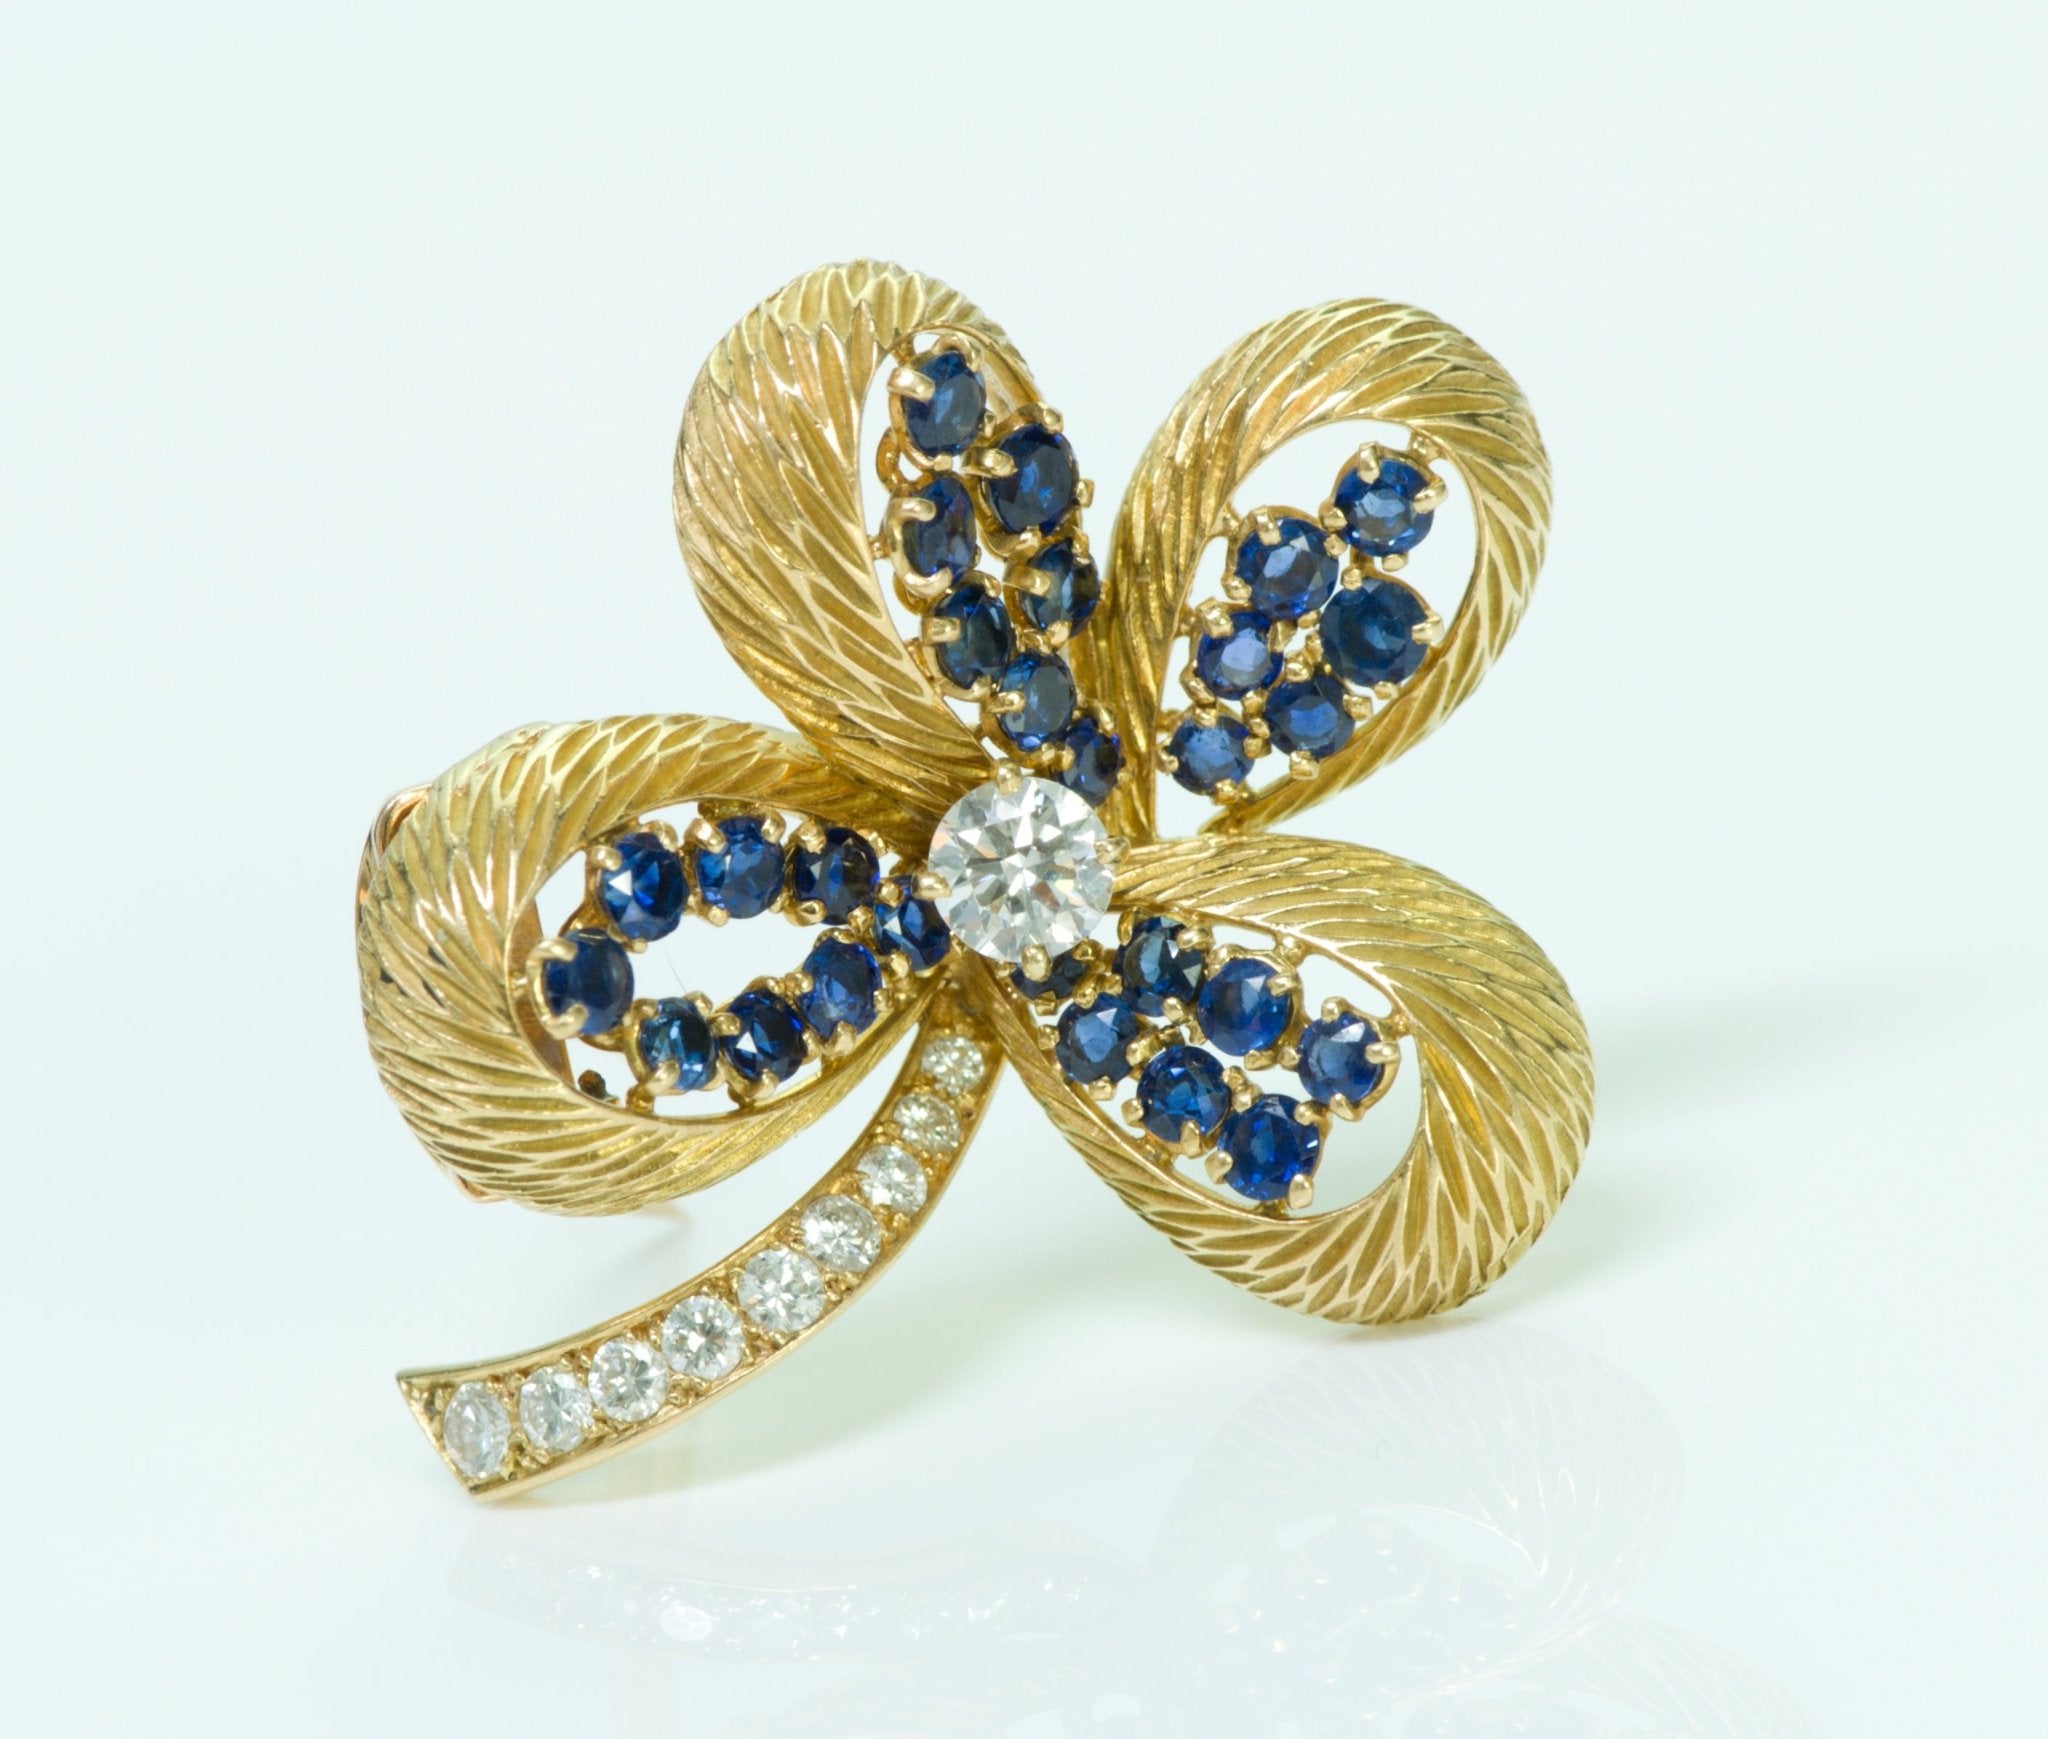 Cartier Paris 18K Gold Clover Diamond Sapphire Pin/Brooch